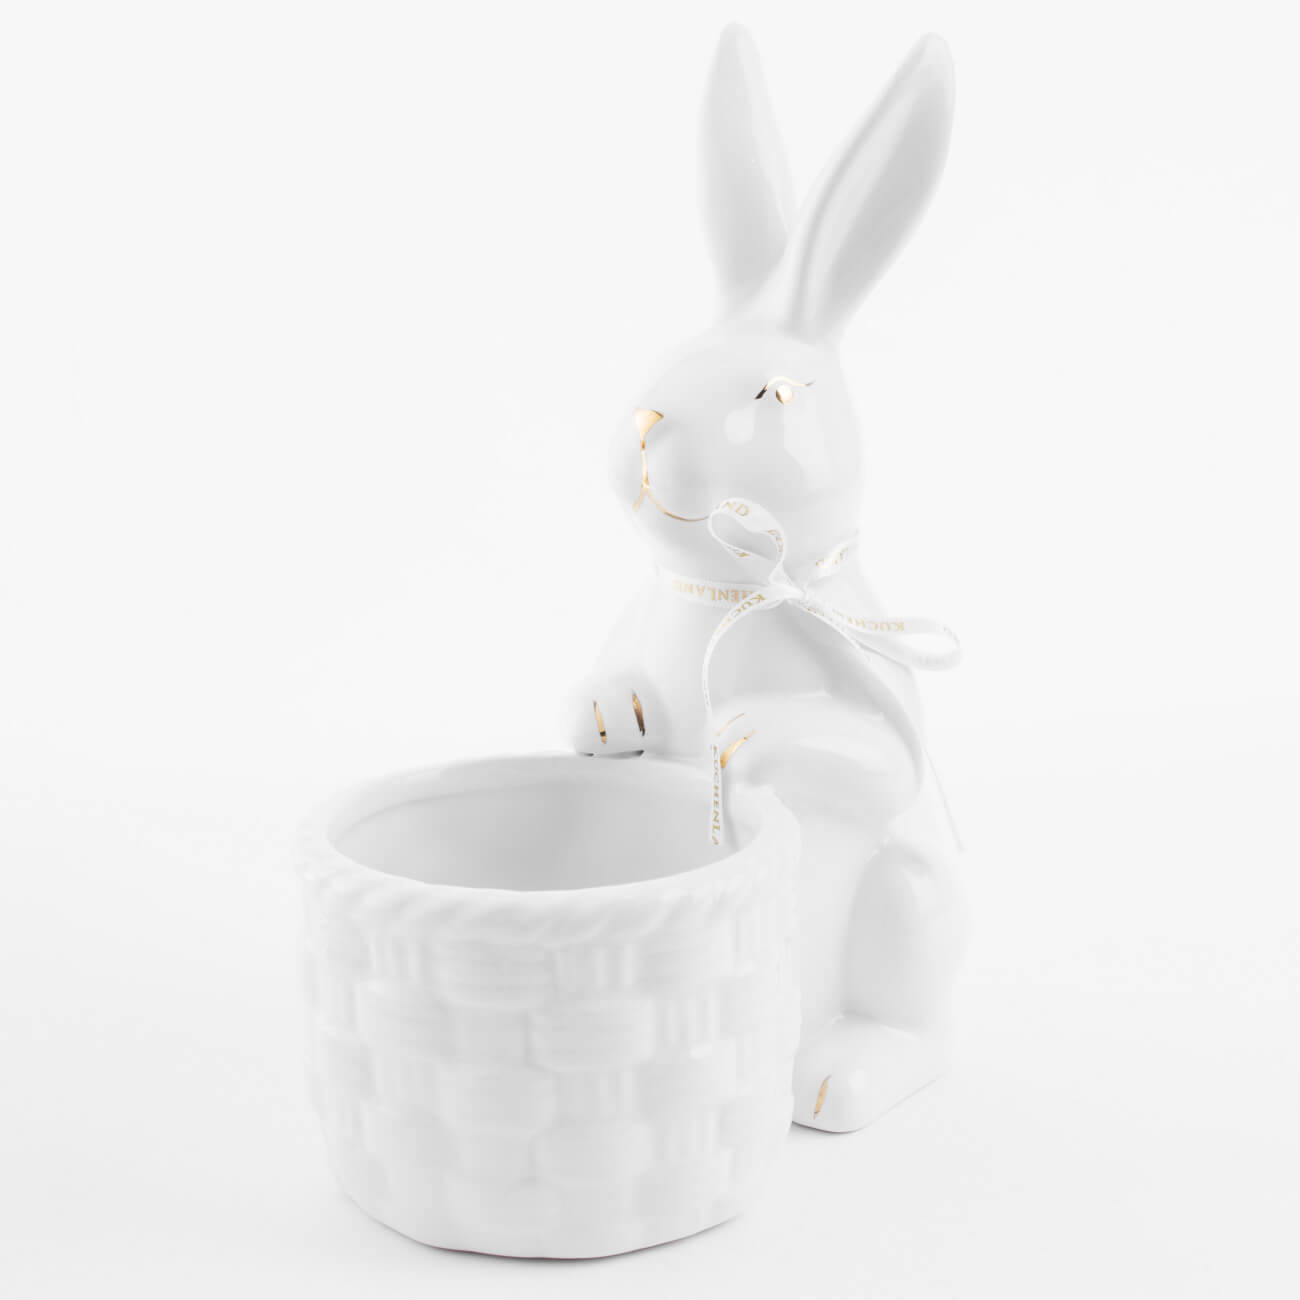 Конфетница, 18x23 см, керамика, бело-золотистая, Кролик с плетенной корзиной, Easter gold изображение № 1